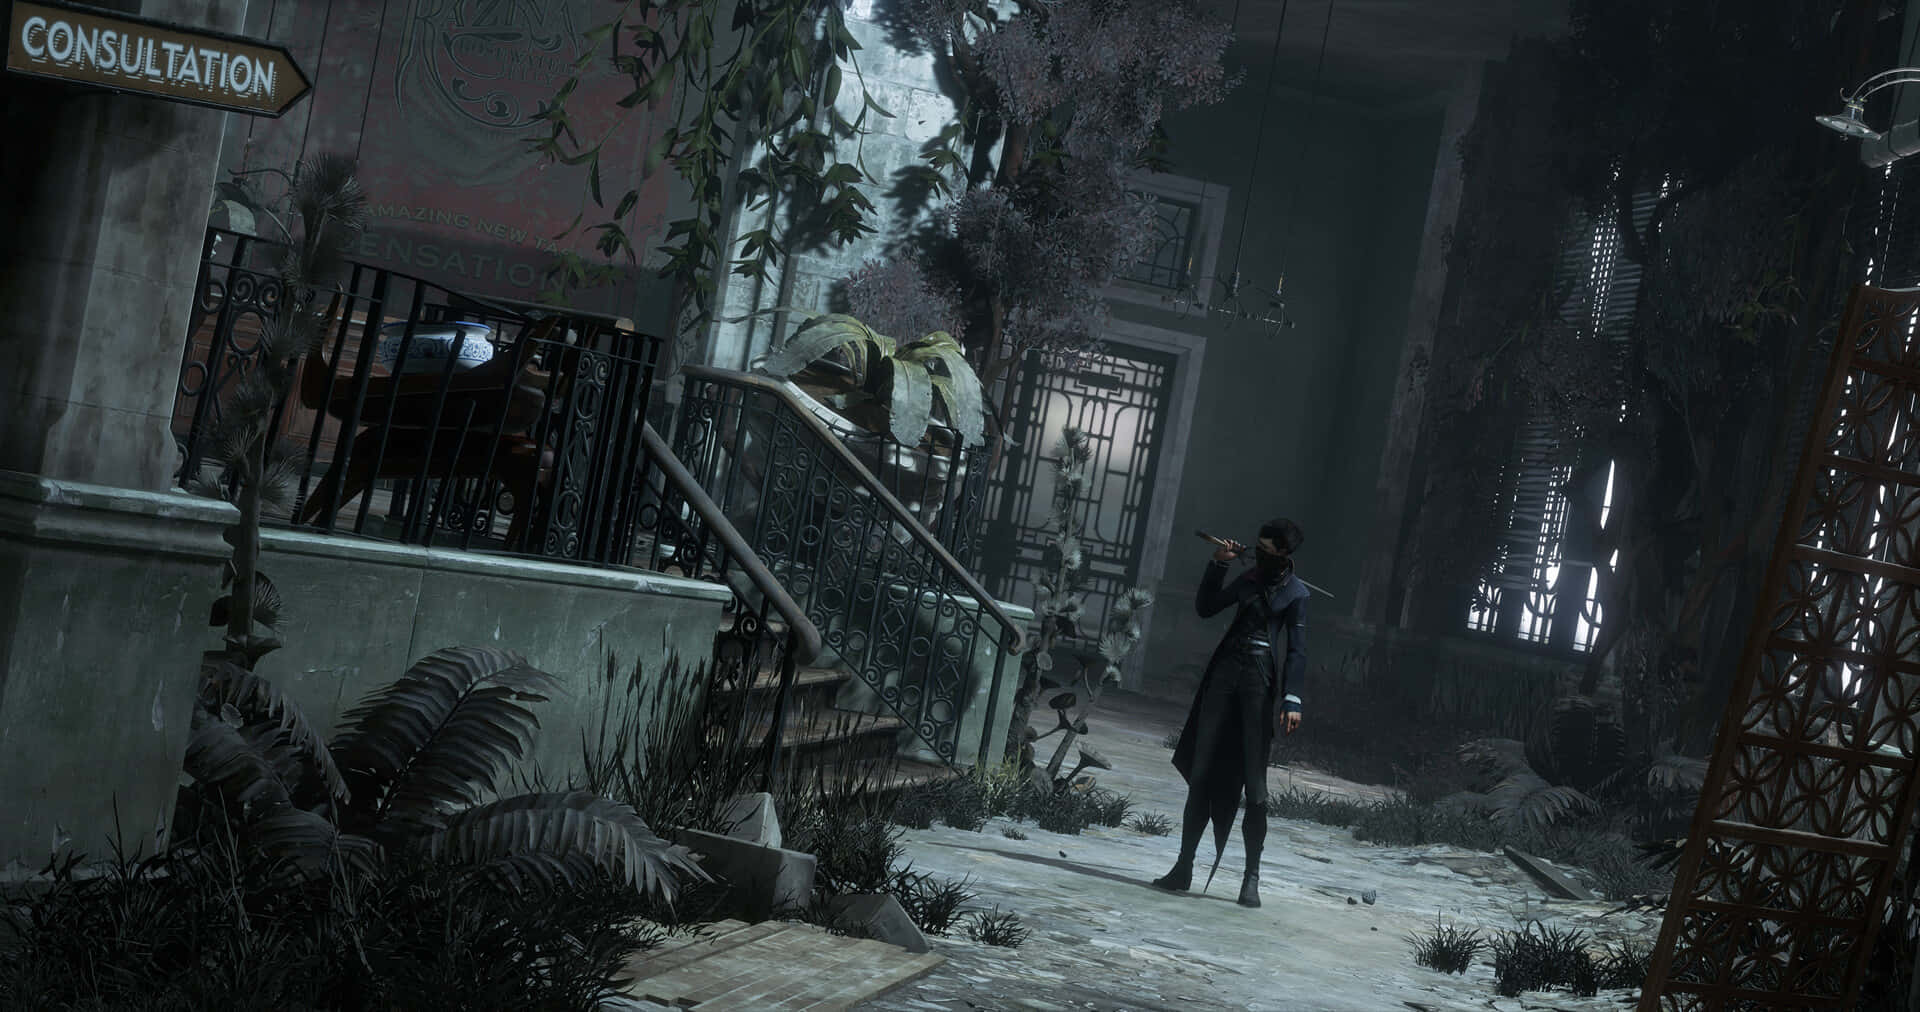 Emilykaldwin Spelet Fortsatt Bästa Dishonored 2 Bakgrund.